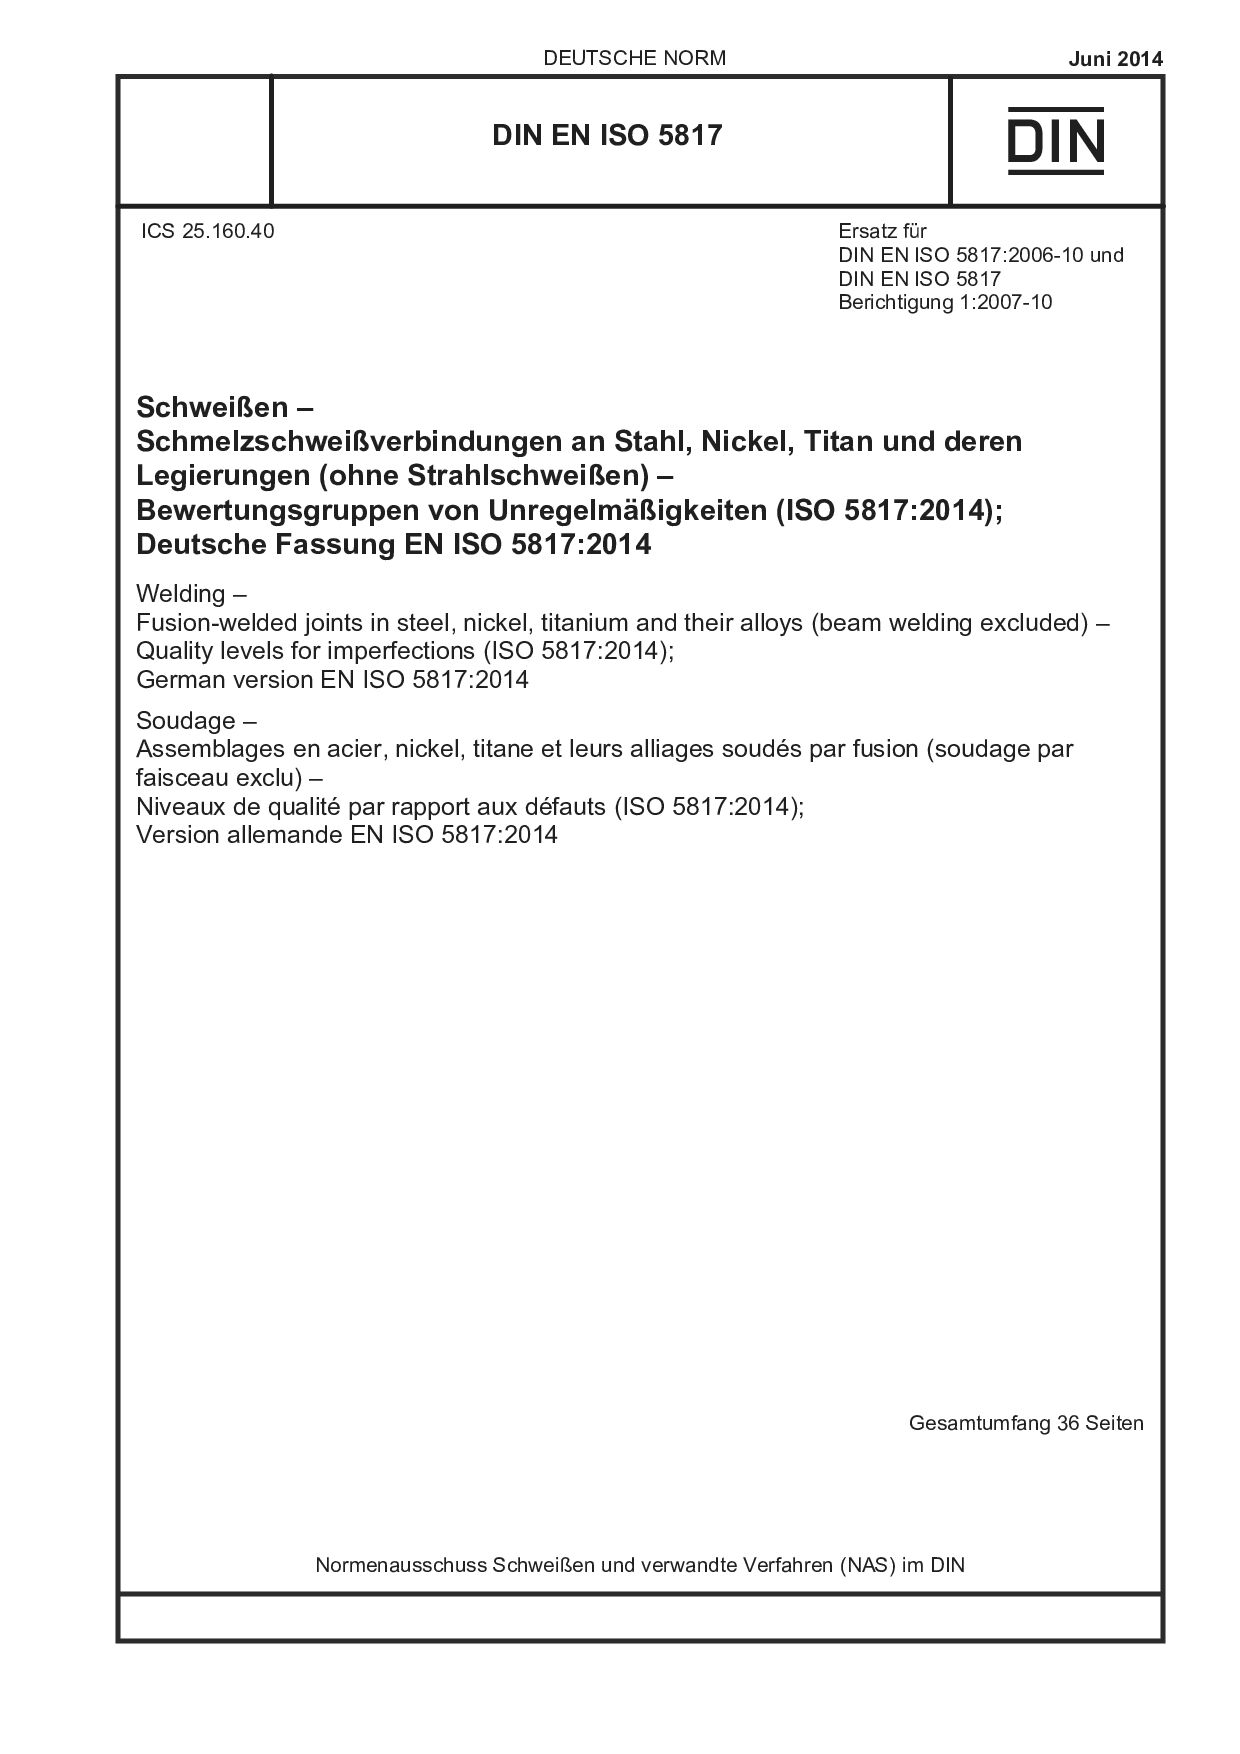 DIN EN ISO 5817:2014-06